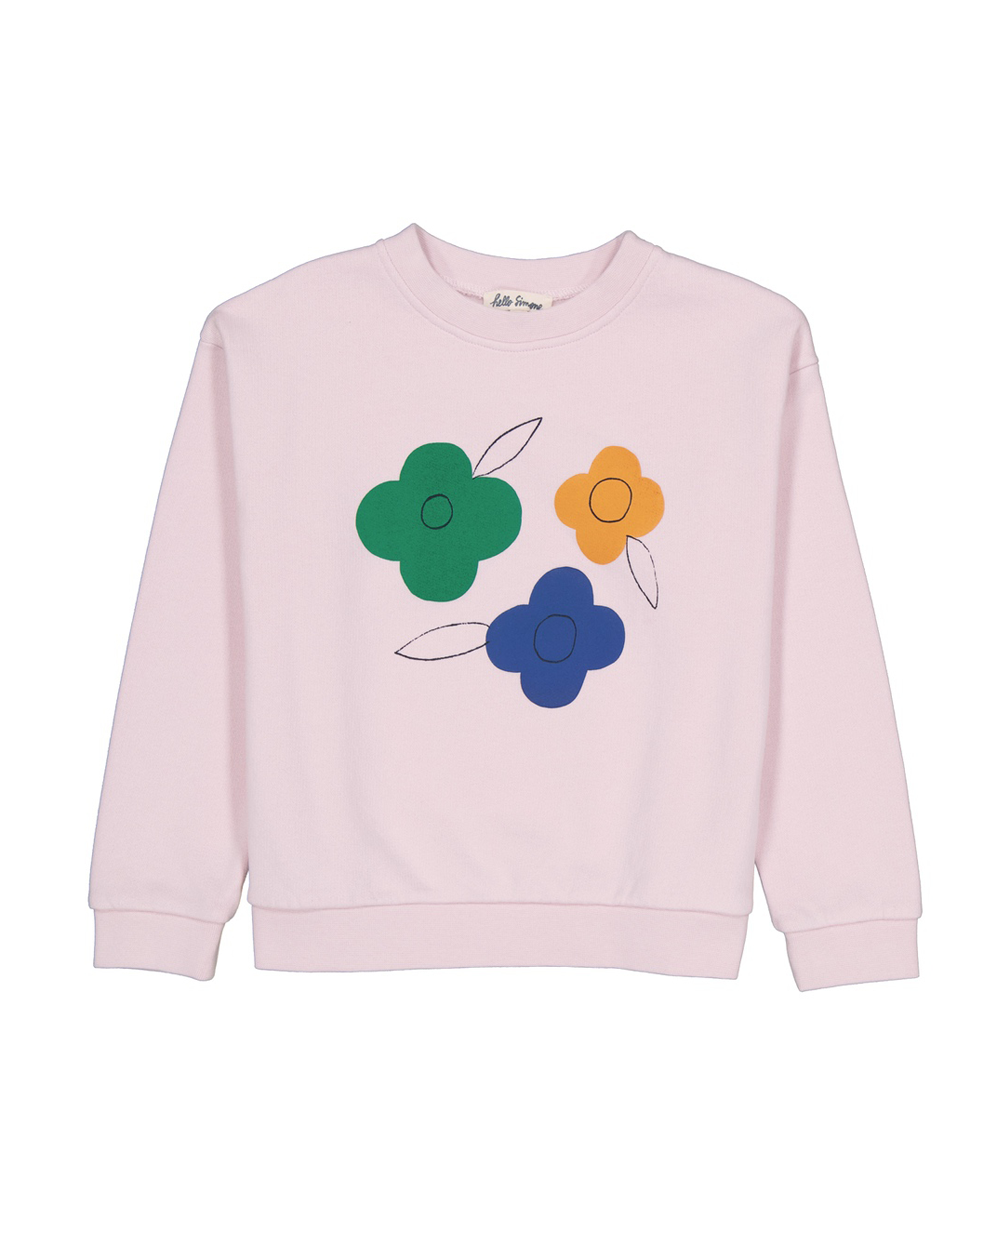 [HELLO SIMONE] Sweety sweatshirt FLOWERS Girls t-shirt [4Y, 8Y, 10Y, 12Y]